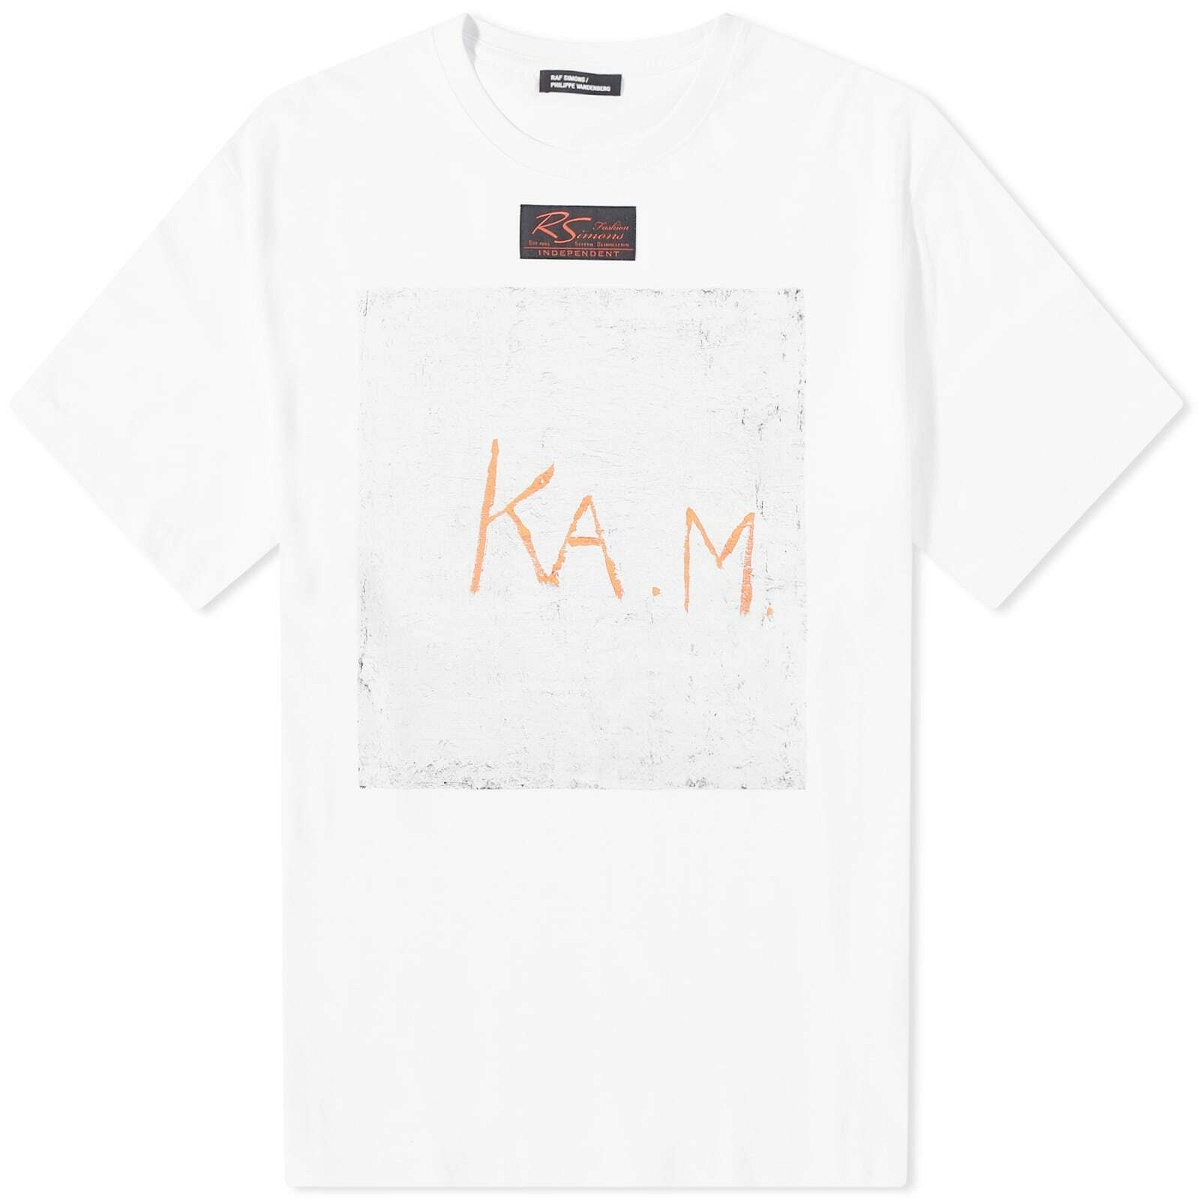 Photo: Raf Simons Men's K.A.M Oversized T-Shirt in White